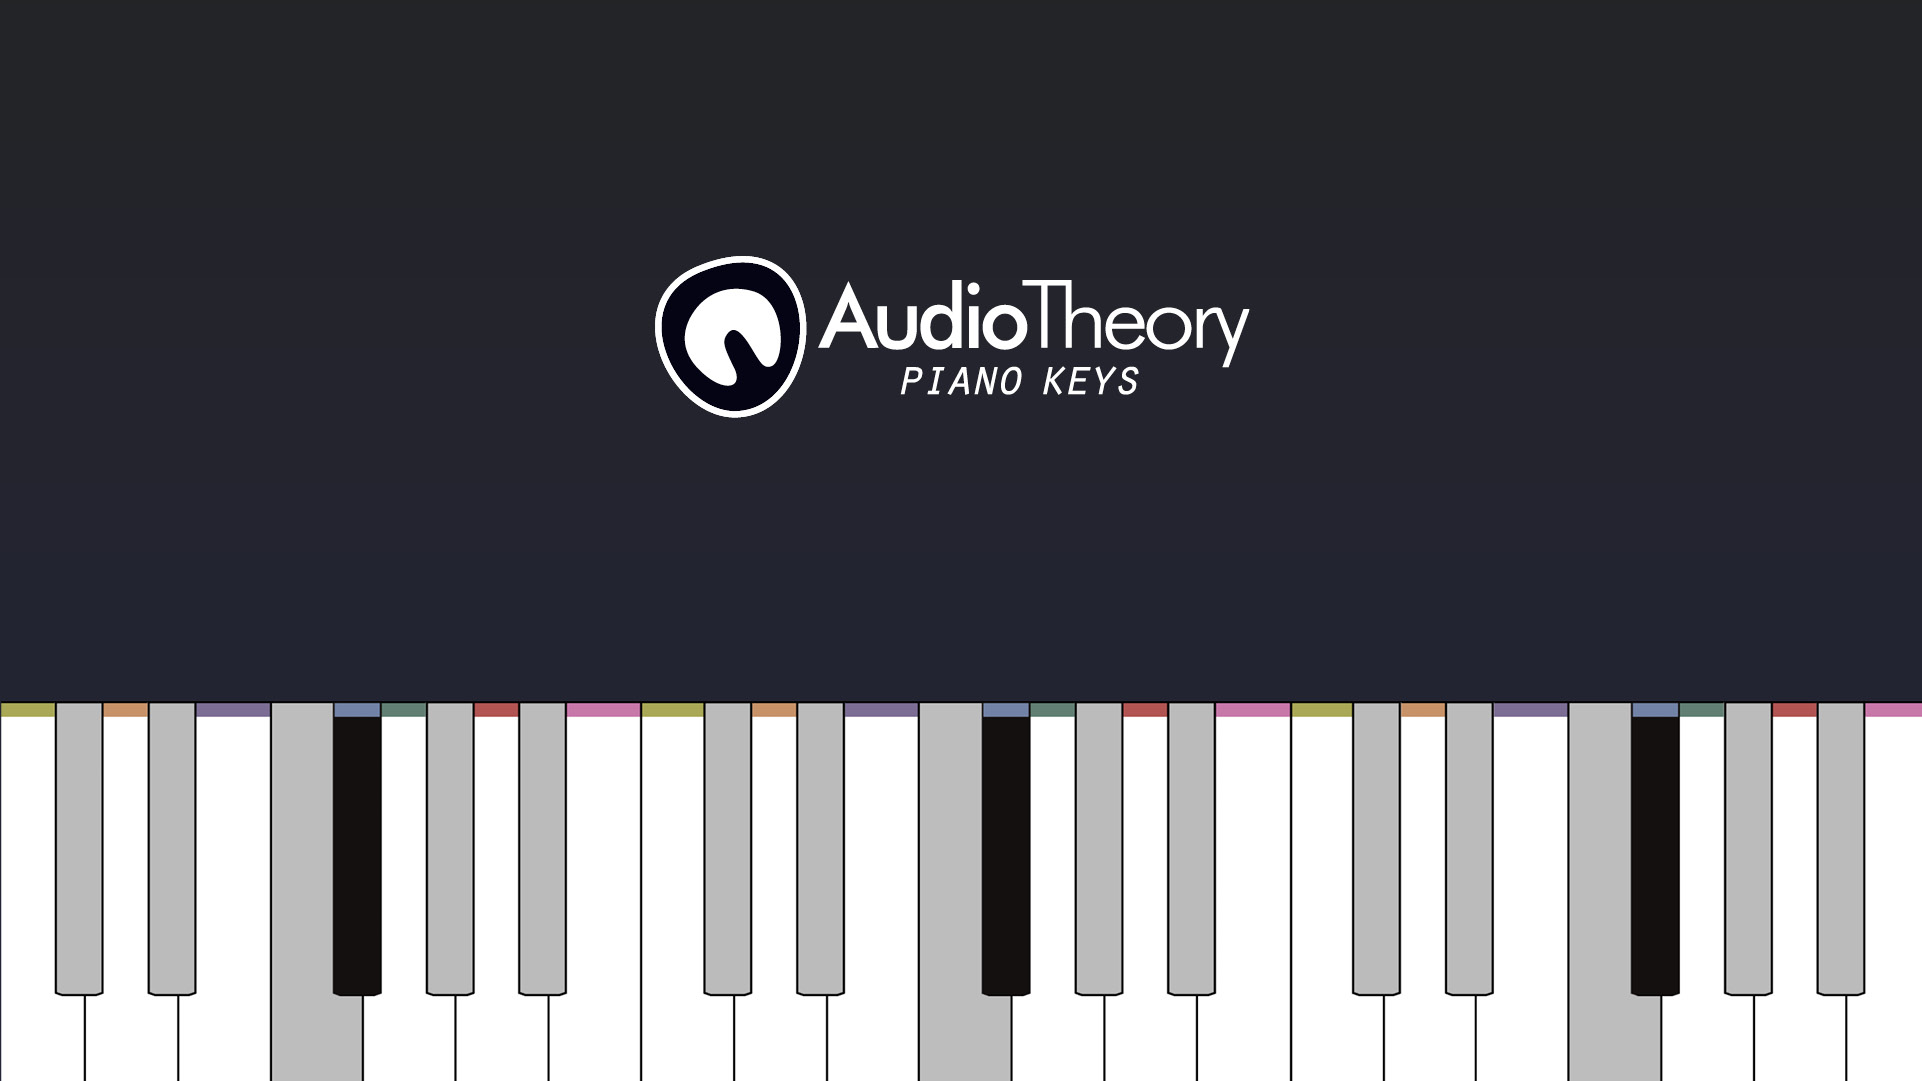 AudioTheory Piano Keys title